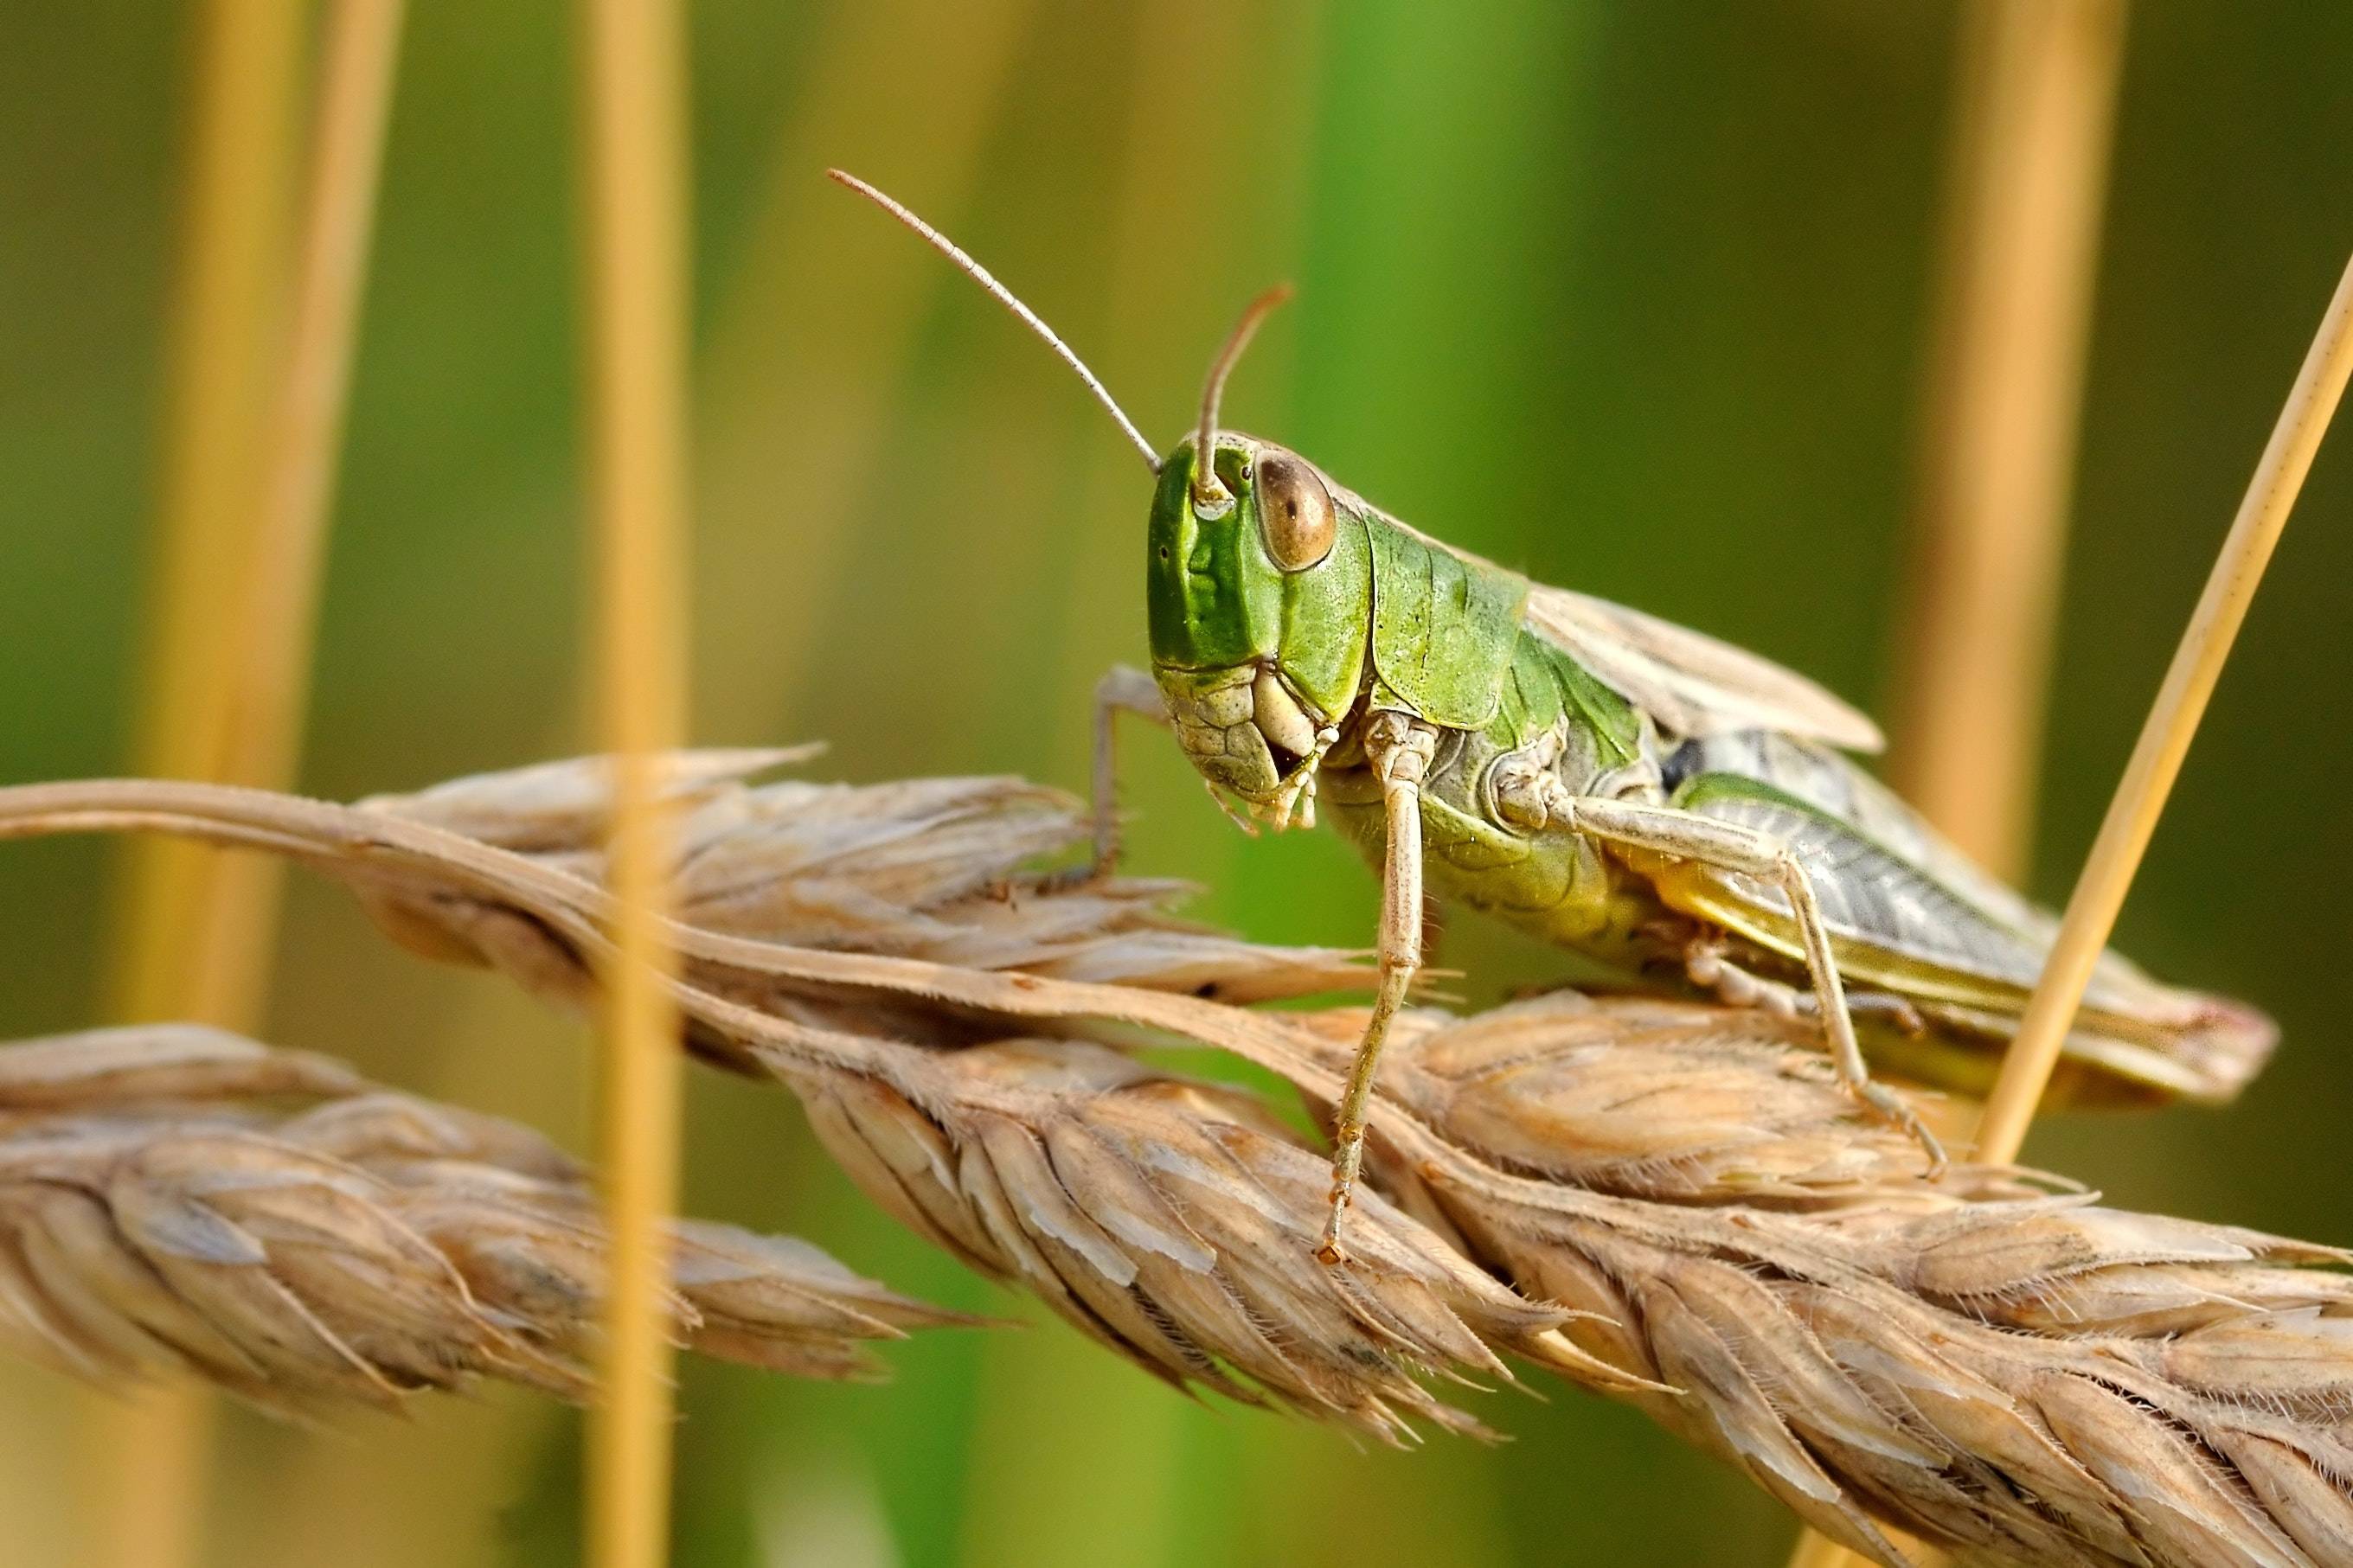 Making Grasshopper Bait, Photograph